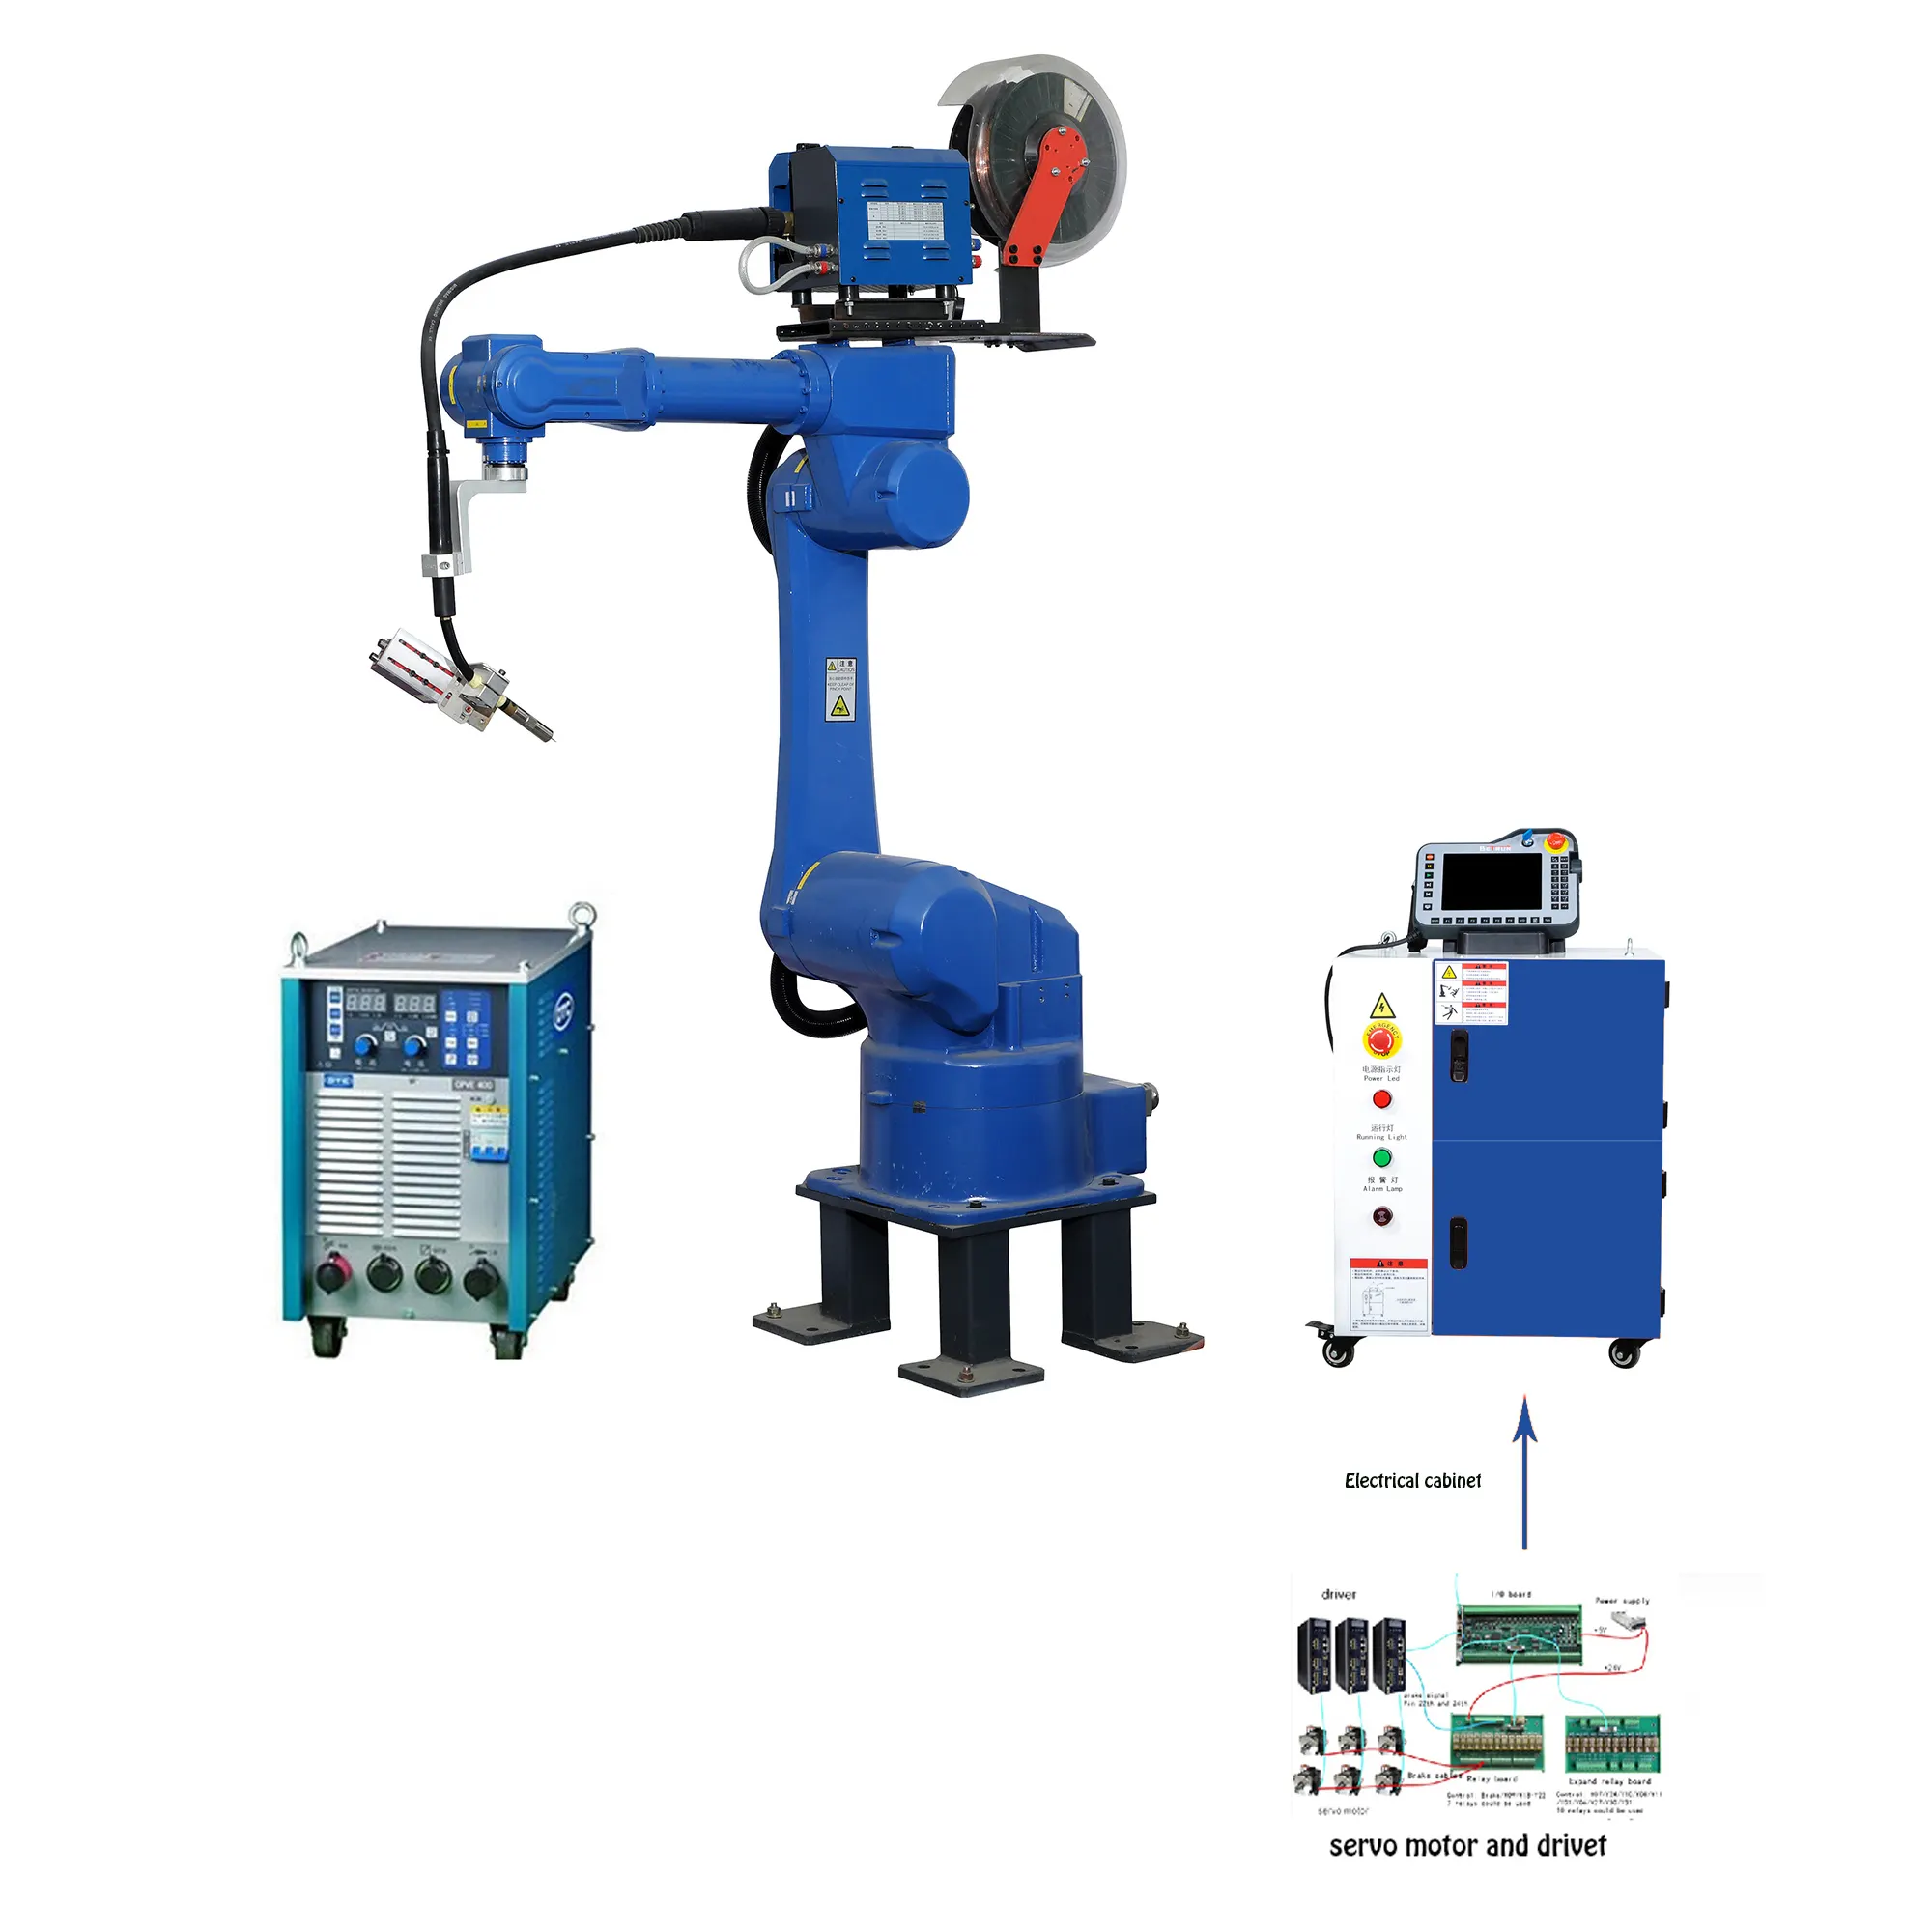 Brazo mecánico Industrial de 4 ejes, Robot o Robot neumático para automatización de taller